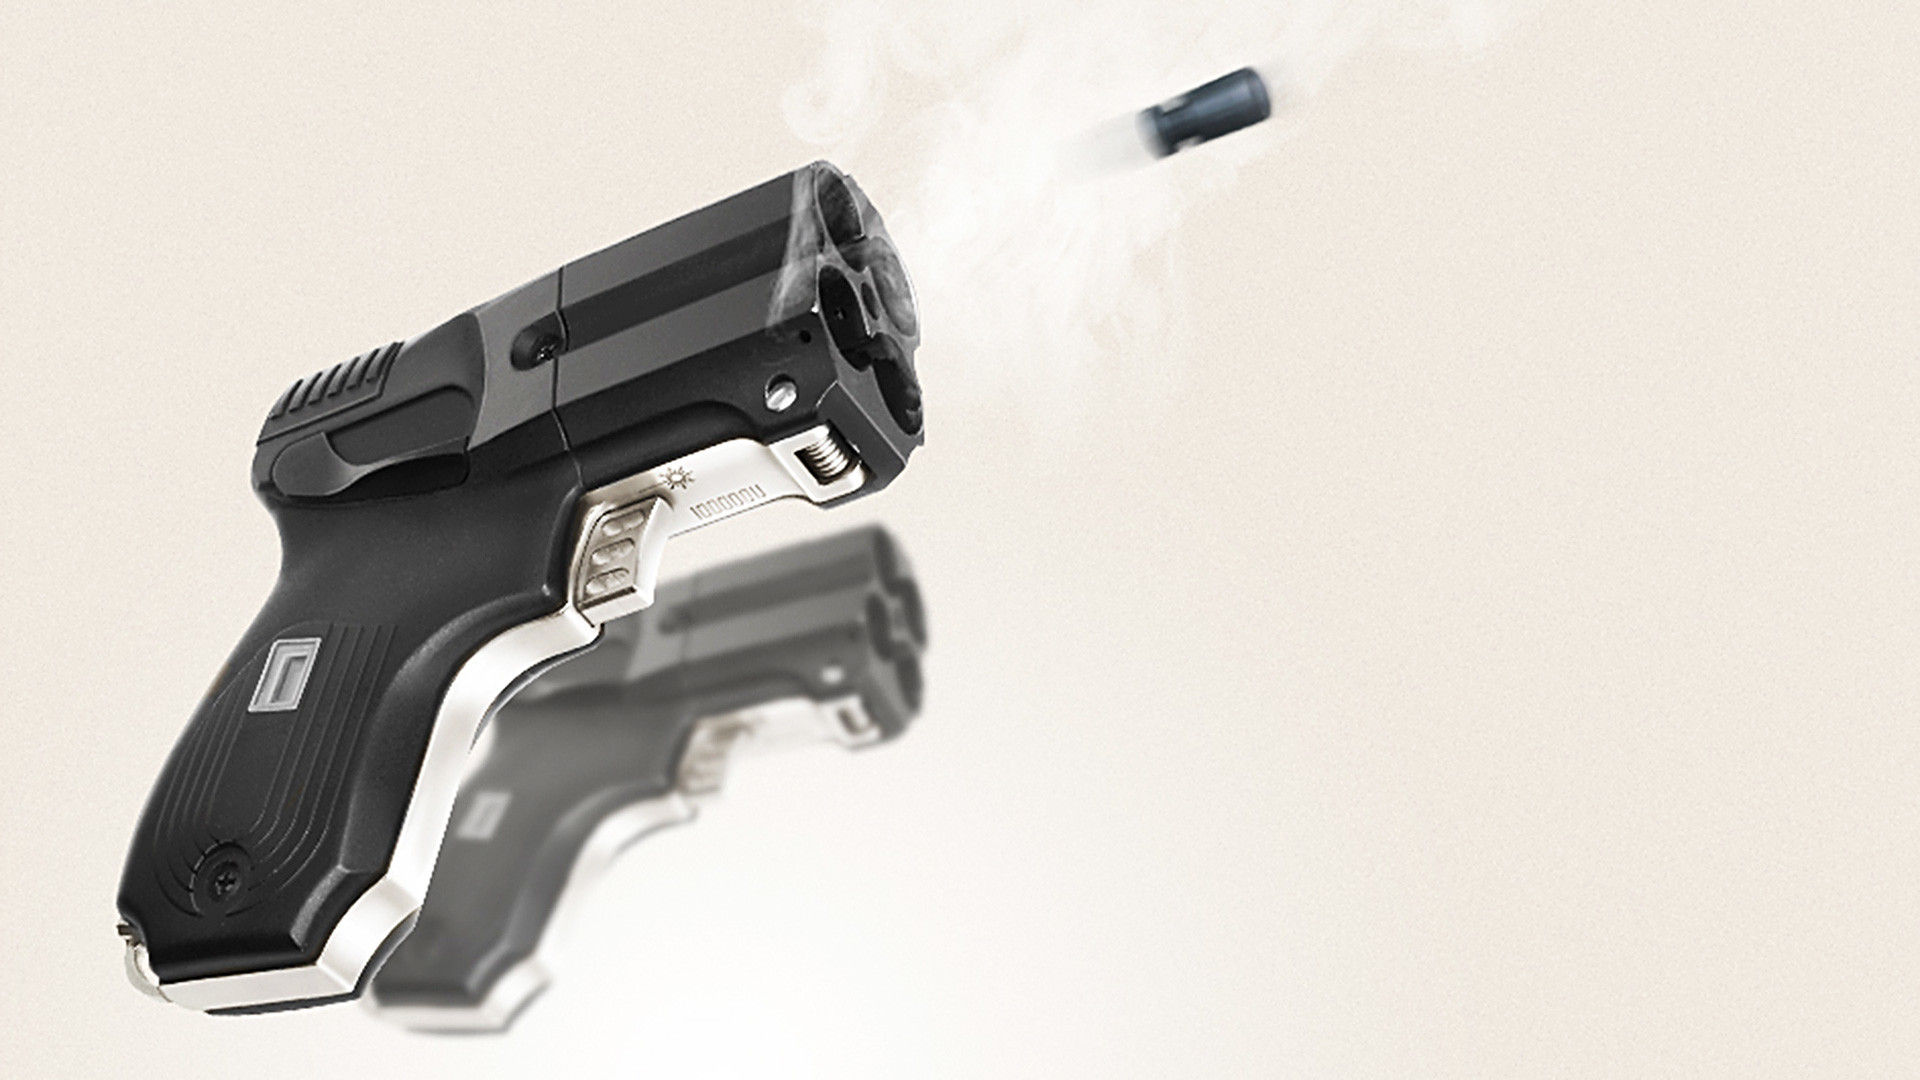 Vendus légalement en Belgique, des pistolets d'alarme sont de plus en plus  transformés en armes mortelles - La DH/Les Sports+